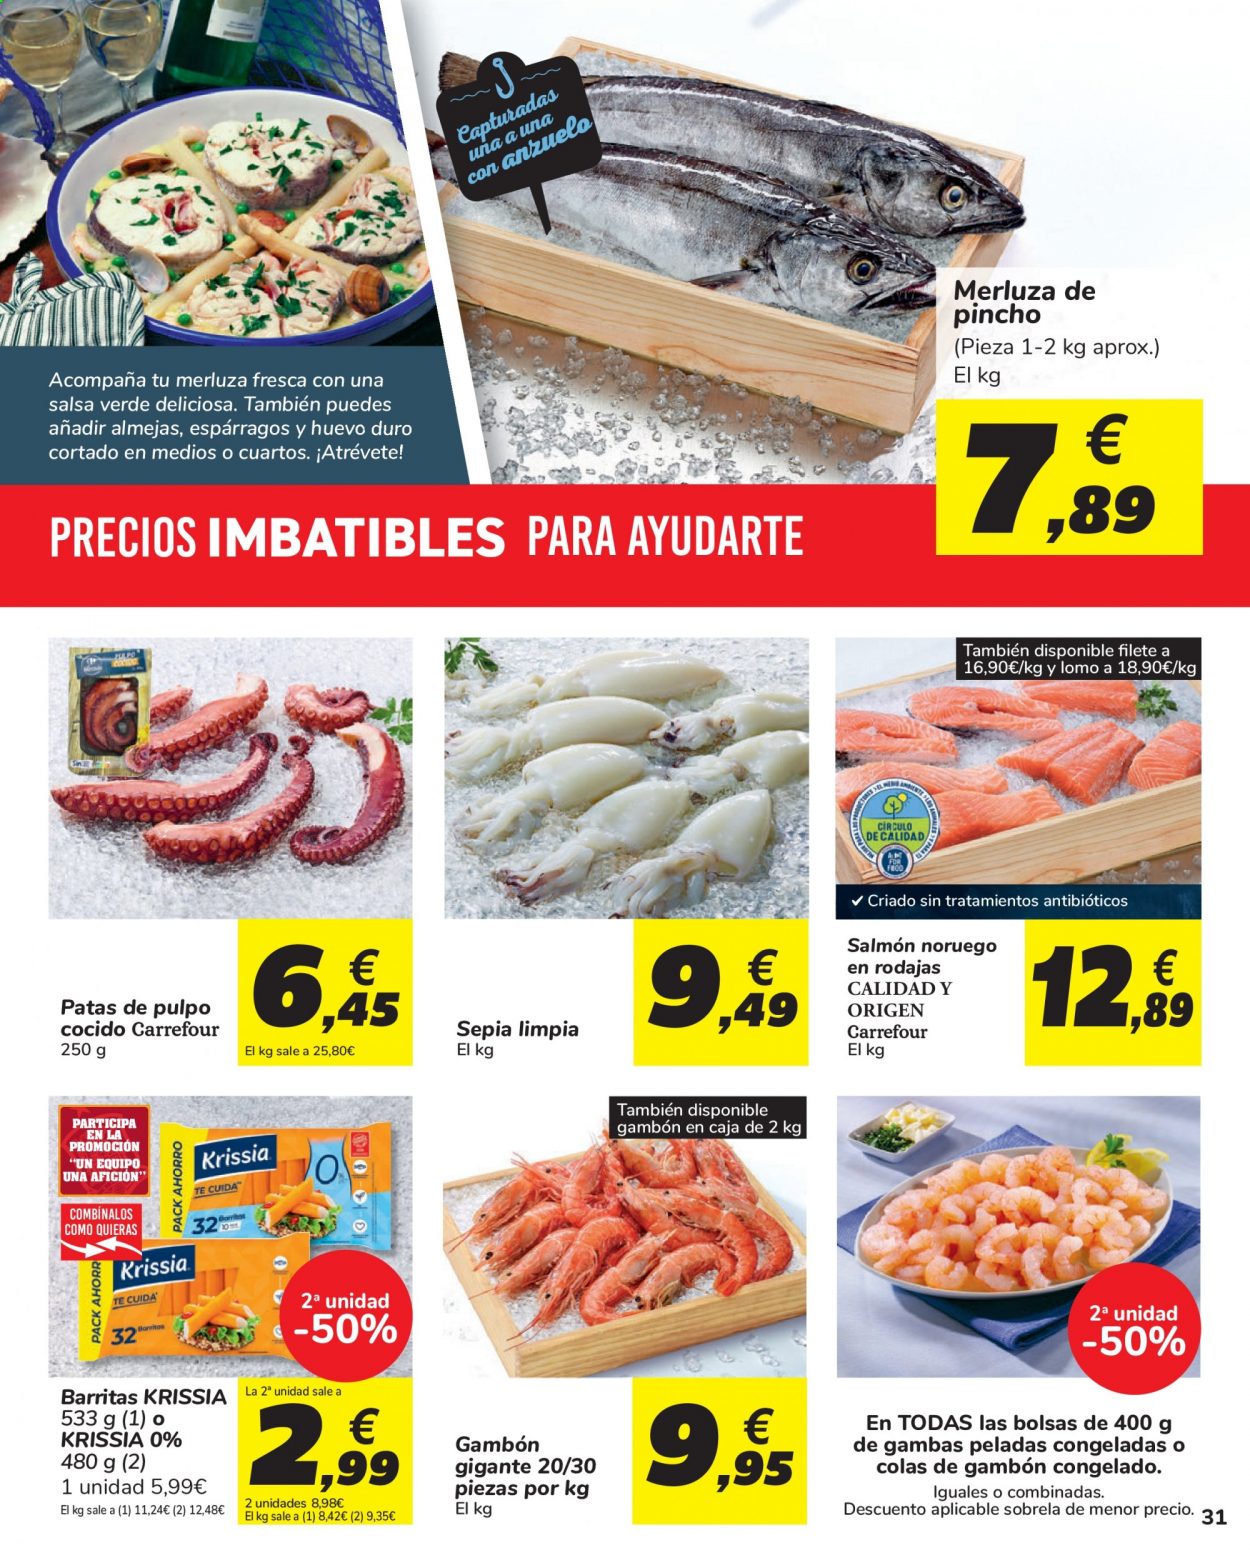 thumbnail - Folleto actual Carrefour - 11/05/21 - 24/05/21 - Ventas - espárragos, merluza, almeja, gambón, pulpo, salmón. Página 31.